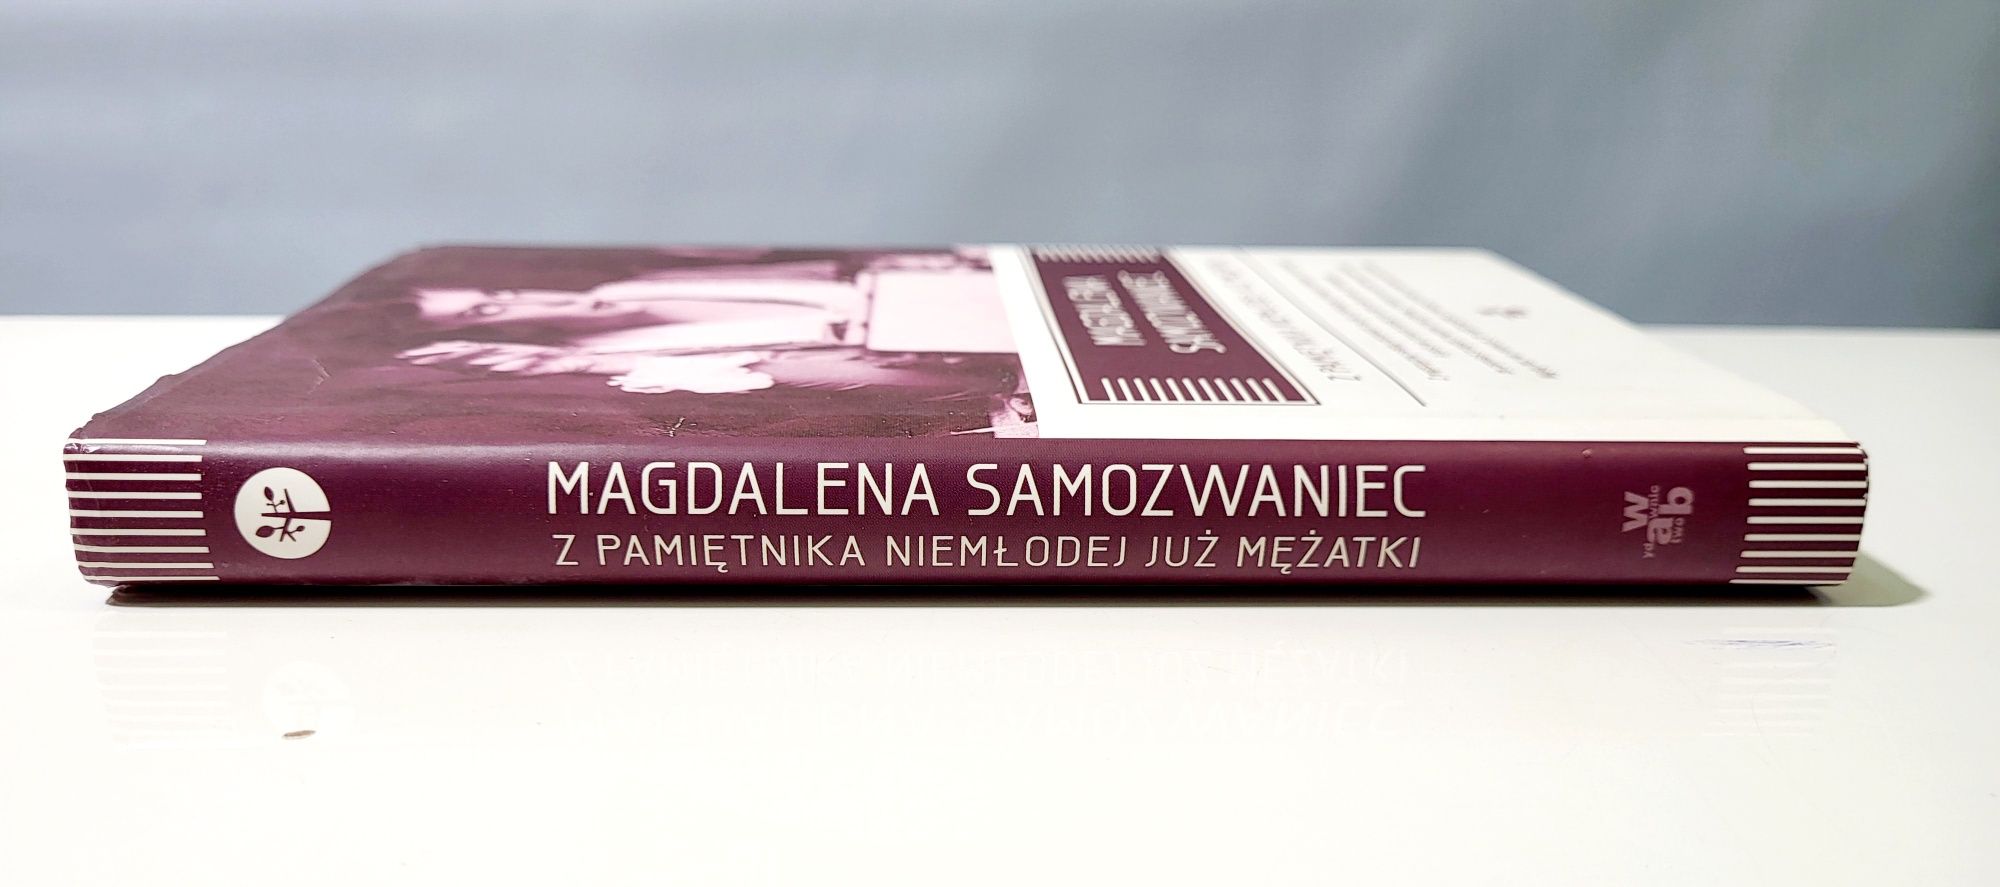 Magdalena Samozwaniec Z pamiętnika niemłodej już mężatki